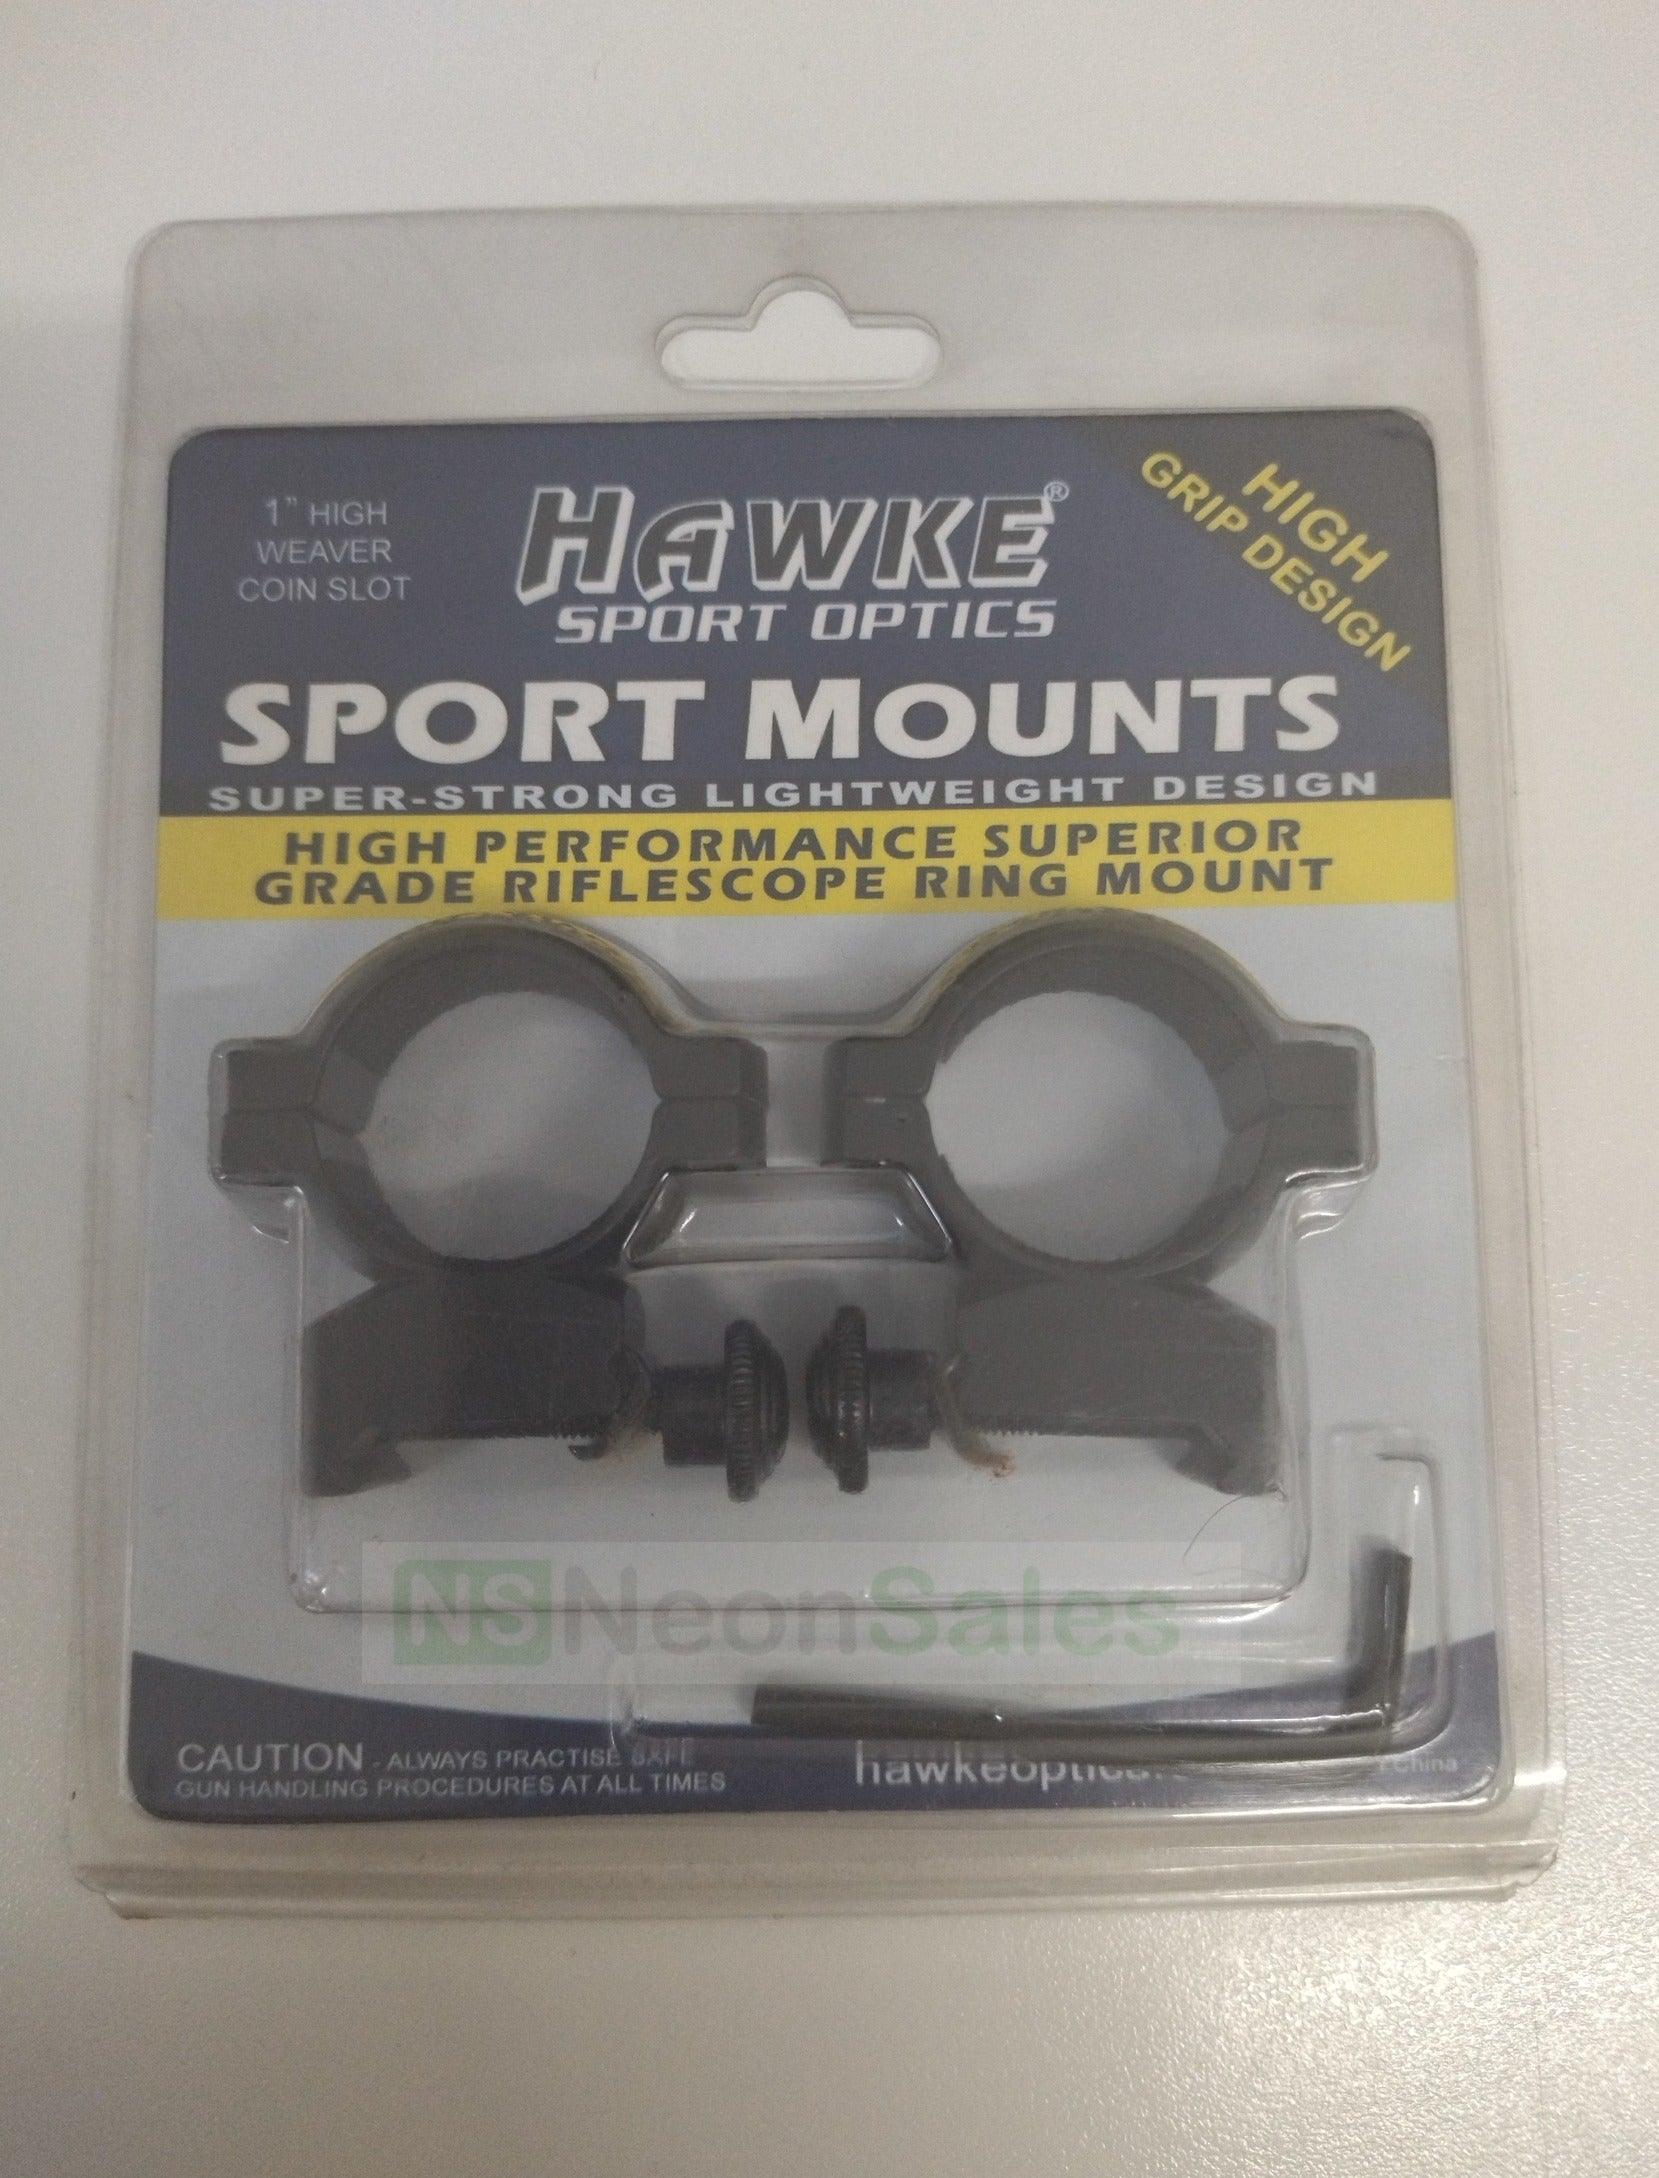 HAWKE SPORTS MOUNT 3/8" 2PC 1" HIGH - NeonSales